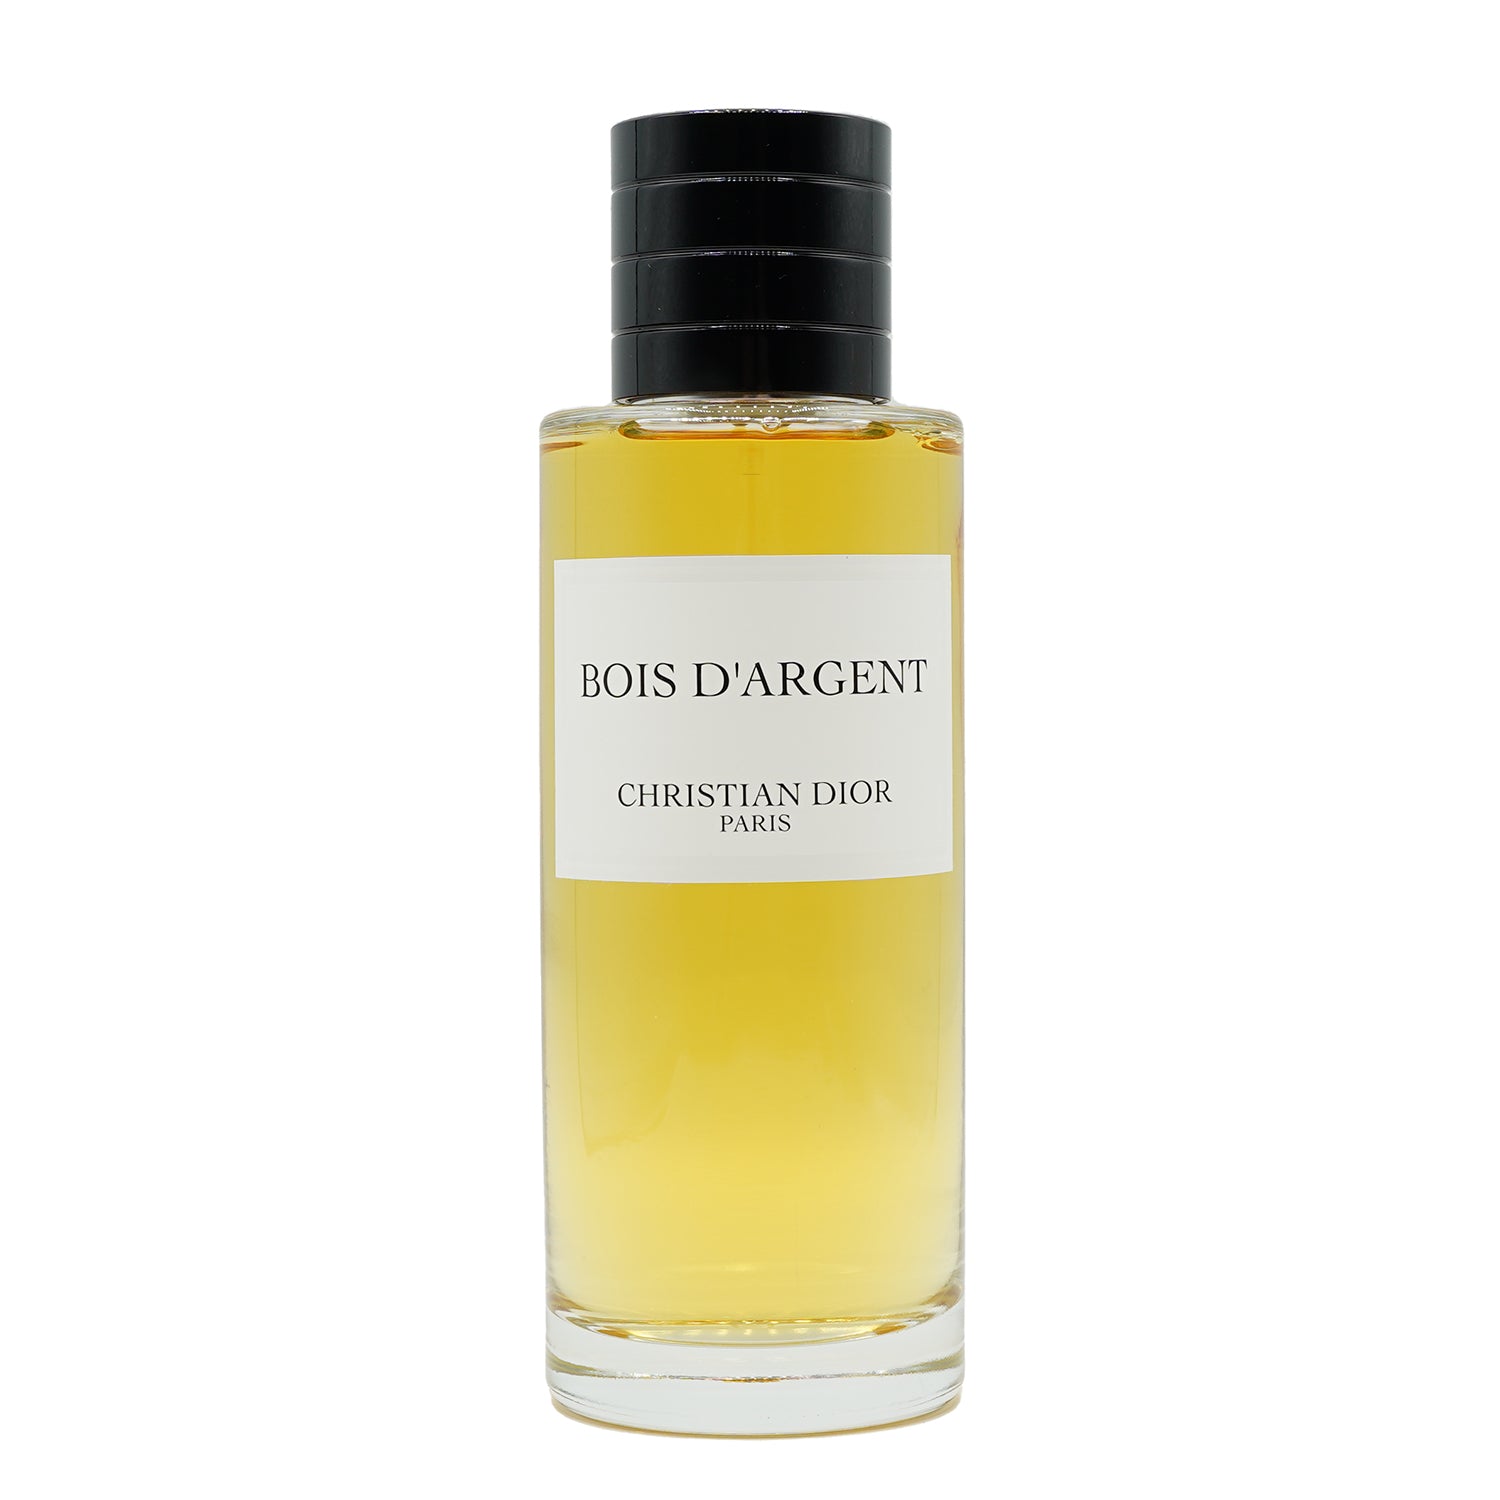 Christian Dior | Bois d'Argent bottling 